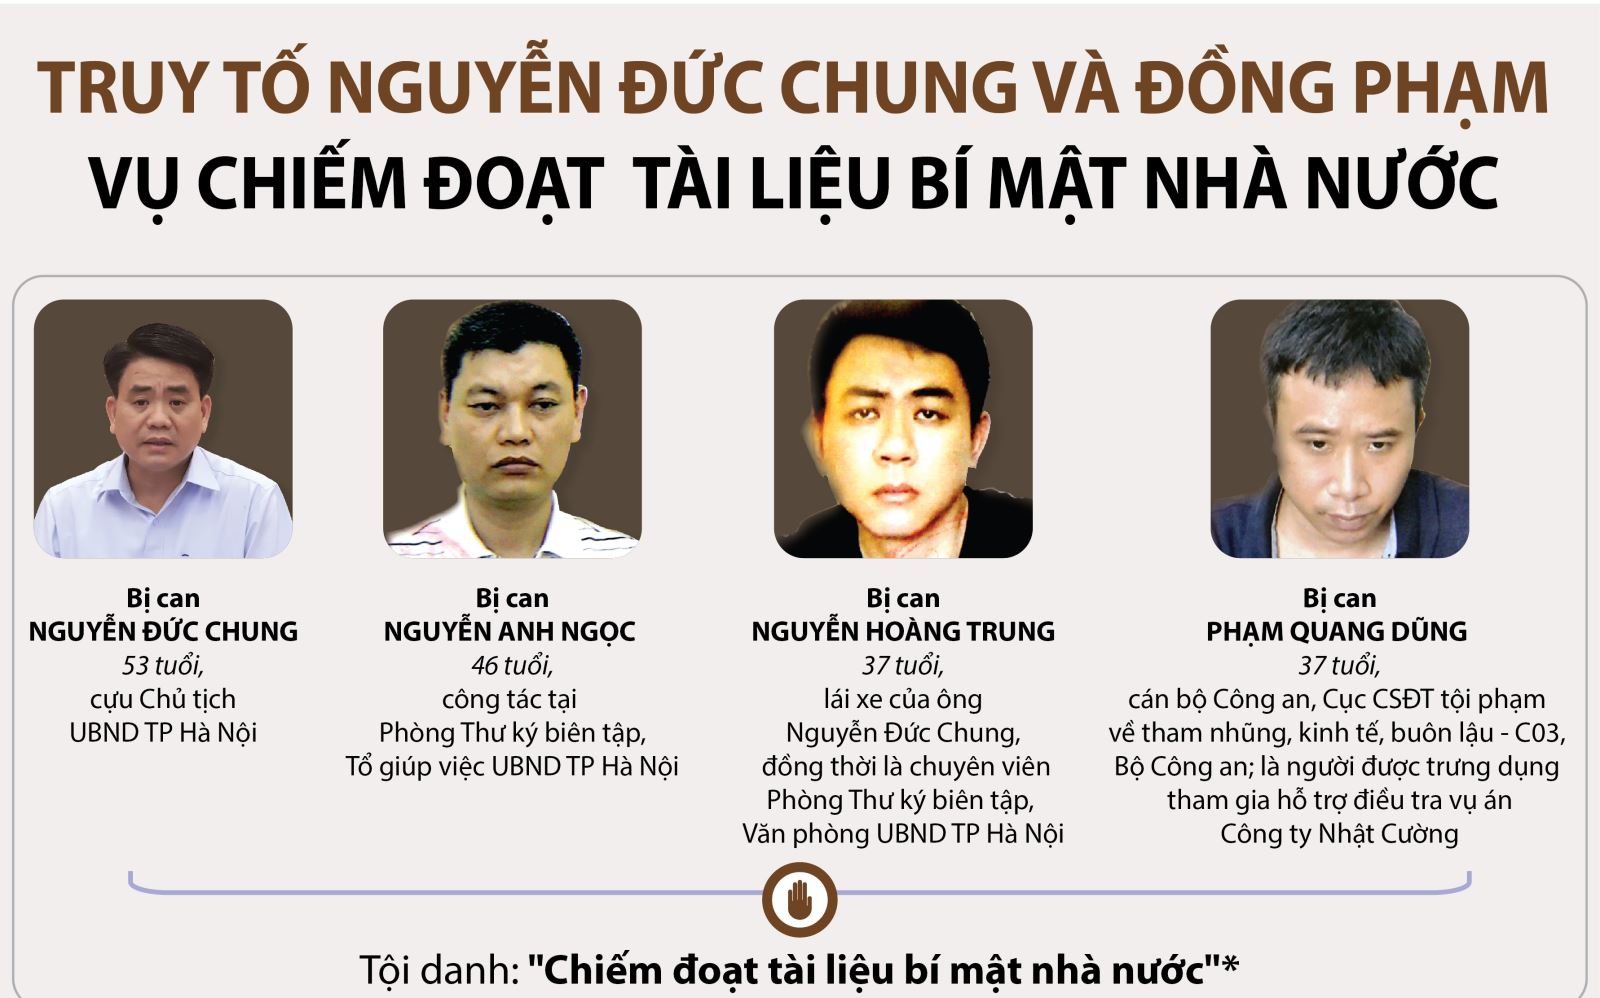 Xét xử kín vụ án bị cáo Nguyễn Đức Chung chiếm đoạt tài liệu bí mật nhà nước - Ảnh 1.